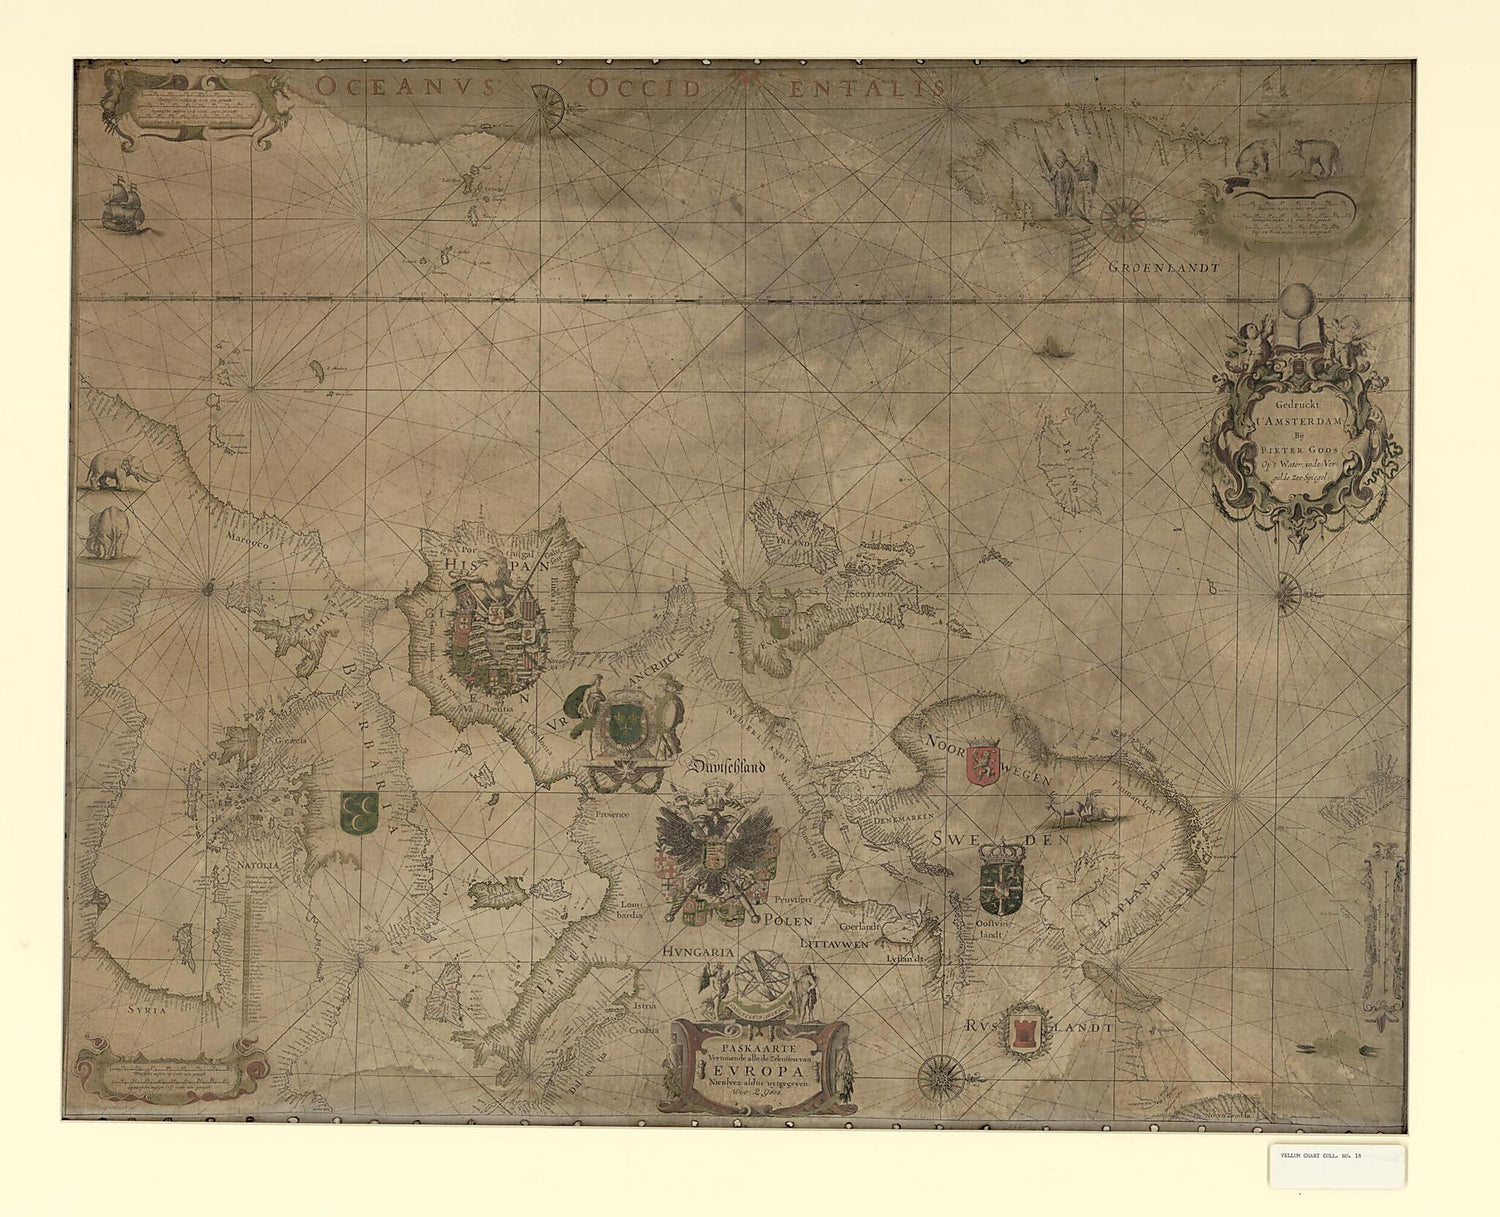 This old map of Paskaarte Vertonende Alle De Zekusten Europe from 1660 was created by Pieter Goos in 1660